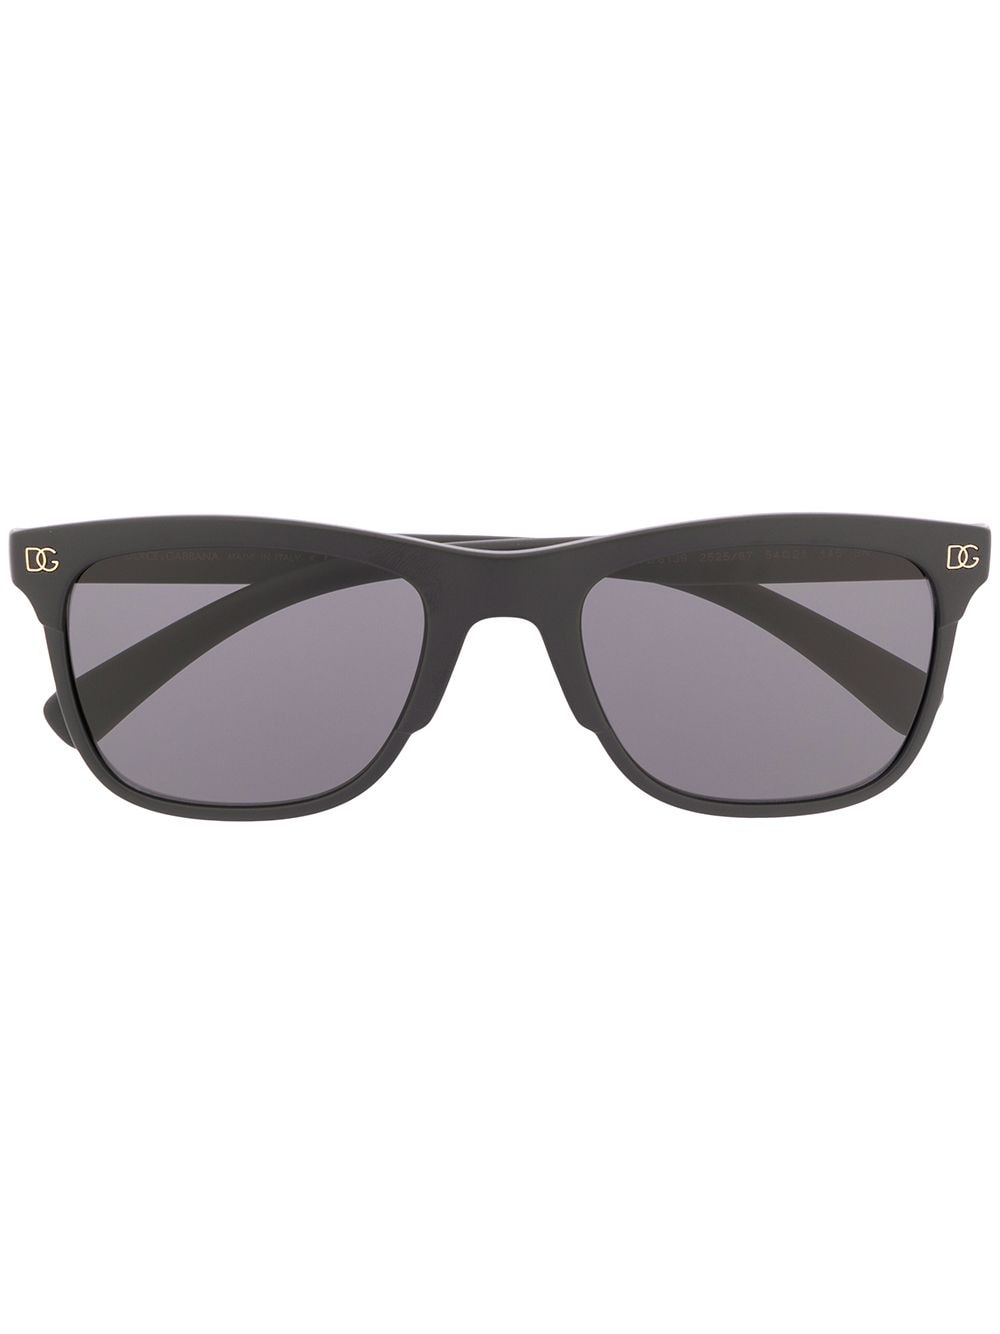 фото Dolce & gabbana eyewear солнцезащитные очки в квадратной оправе